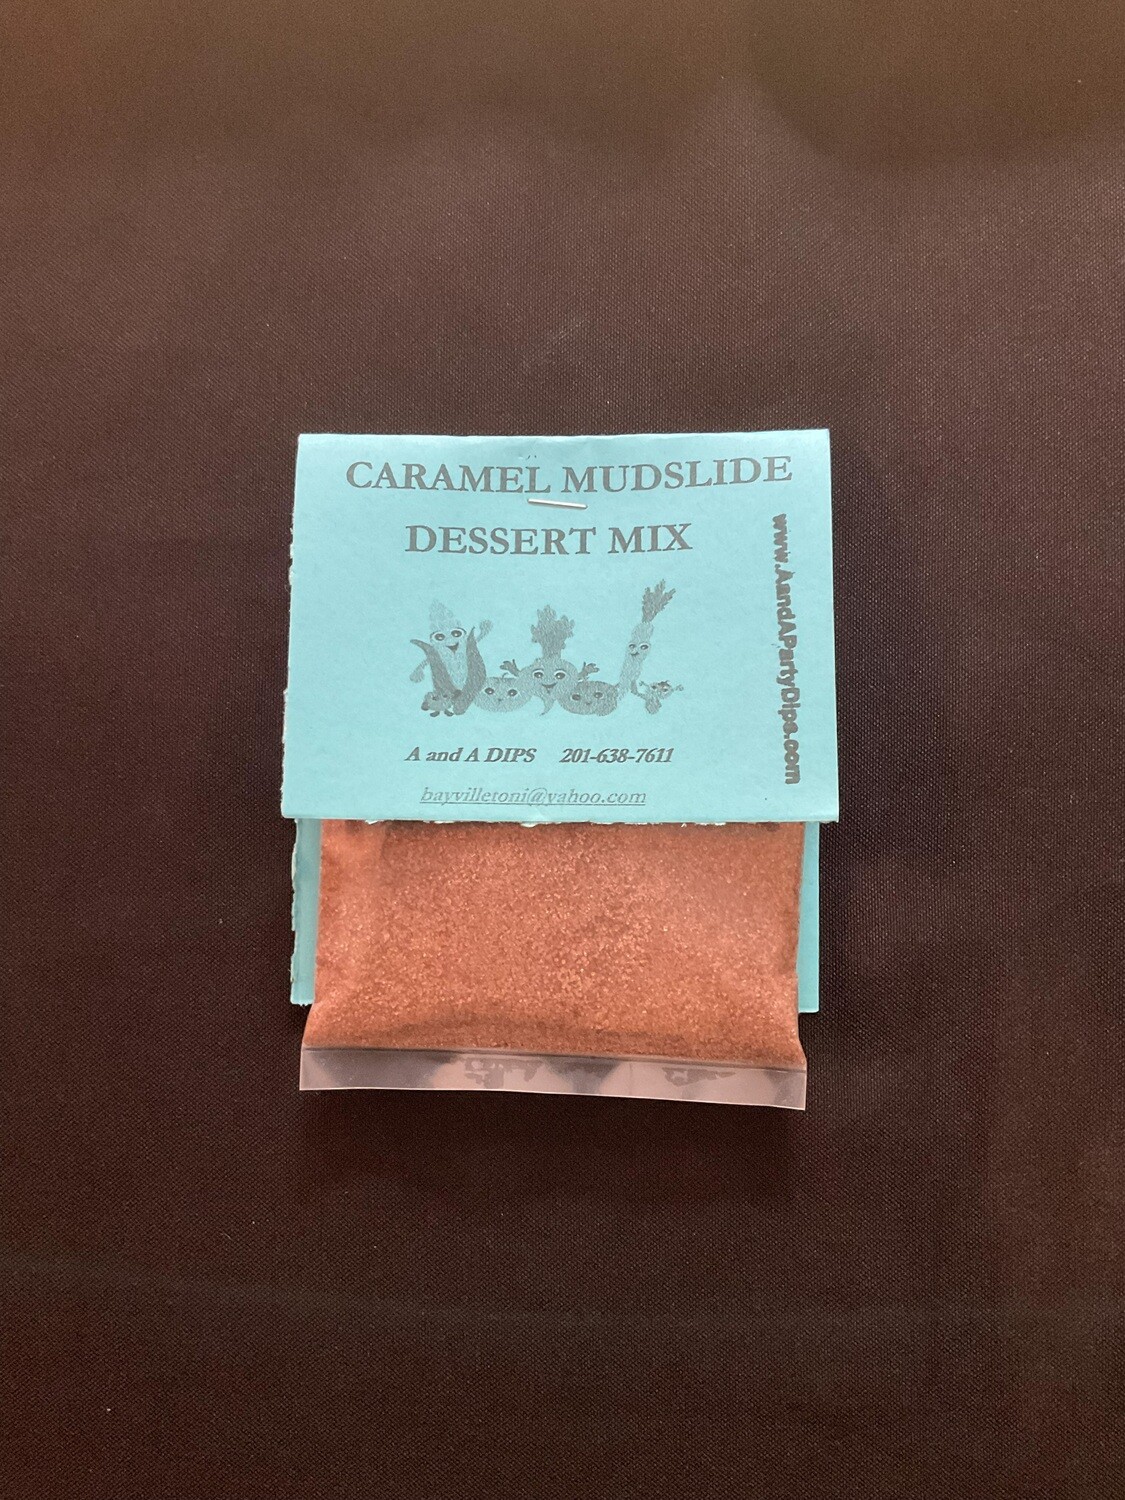 NO BAKE DESSERT MIXES CARAMEL MUDSLIDE